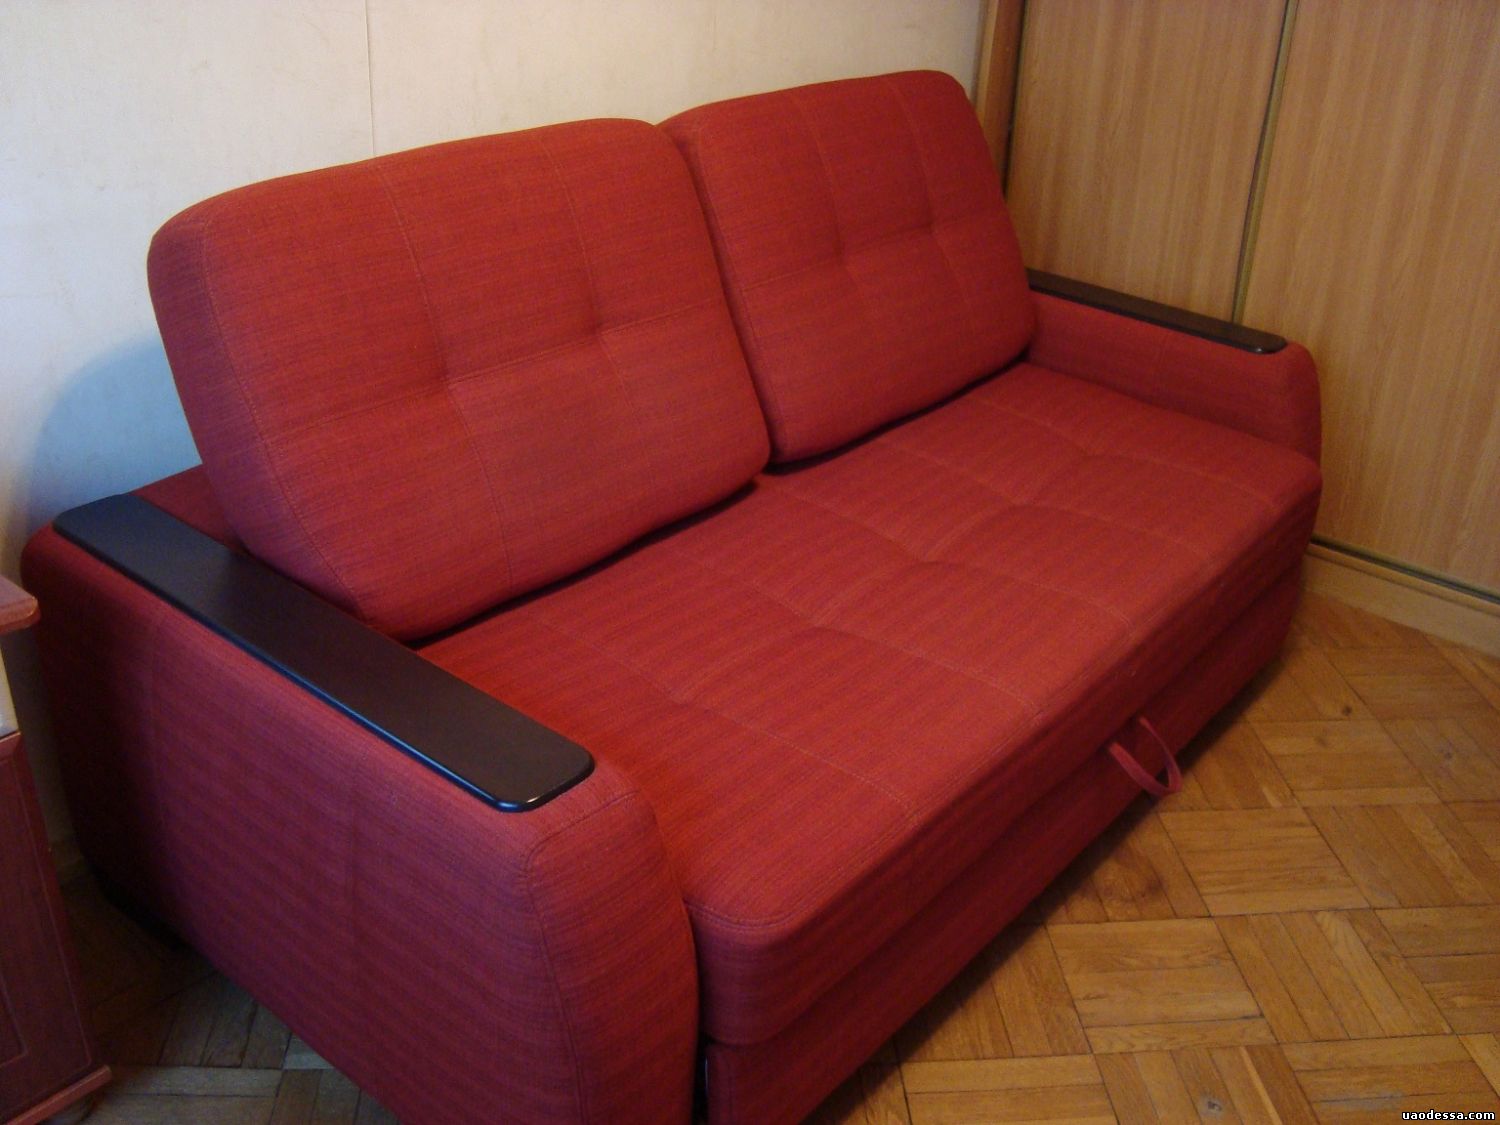 Саратов купить б у диван. Дешевые диваны. Диван б/у. Бэушный диван. Самый дешевый диван.